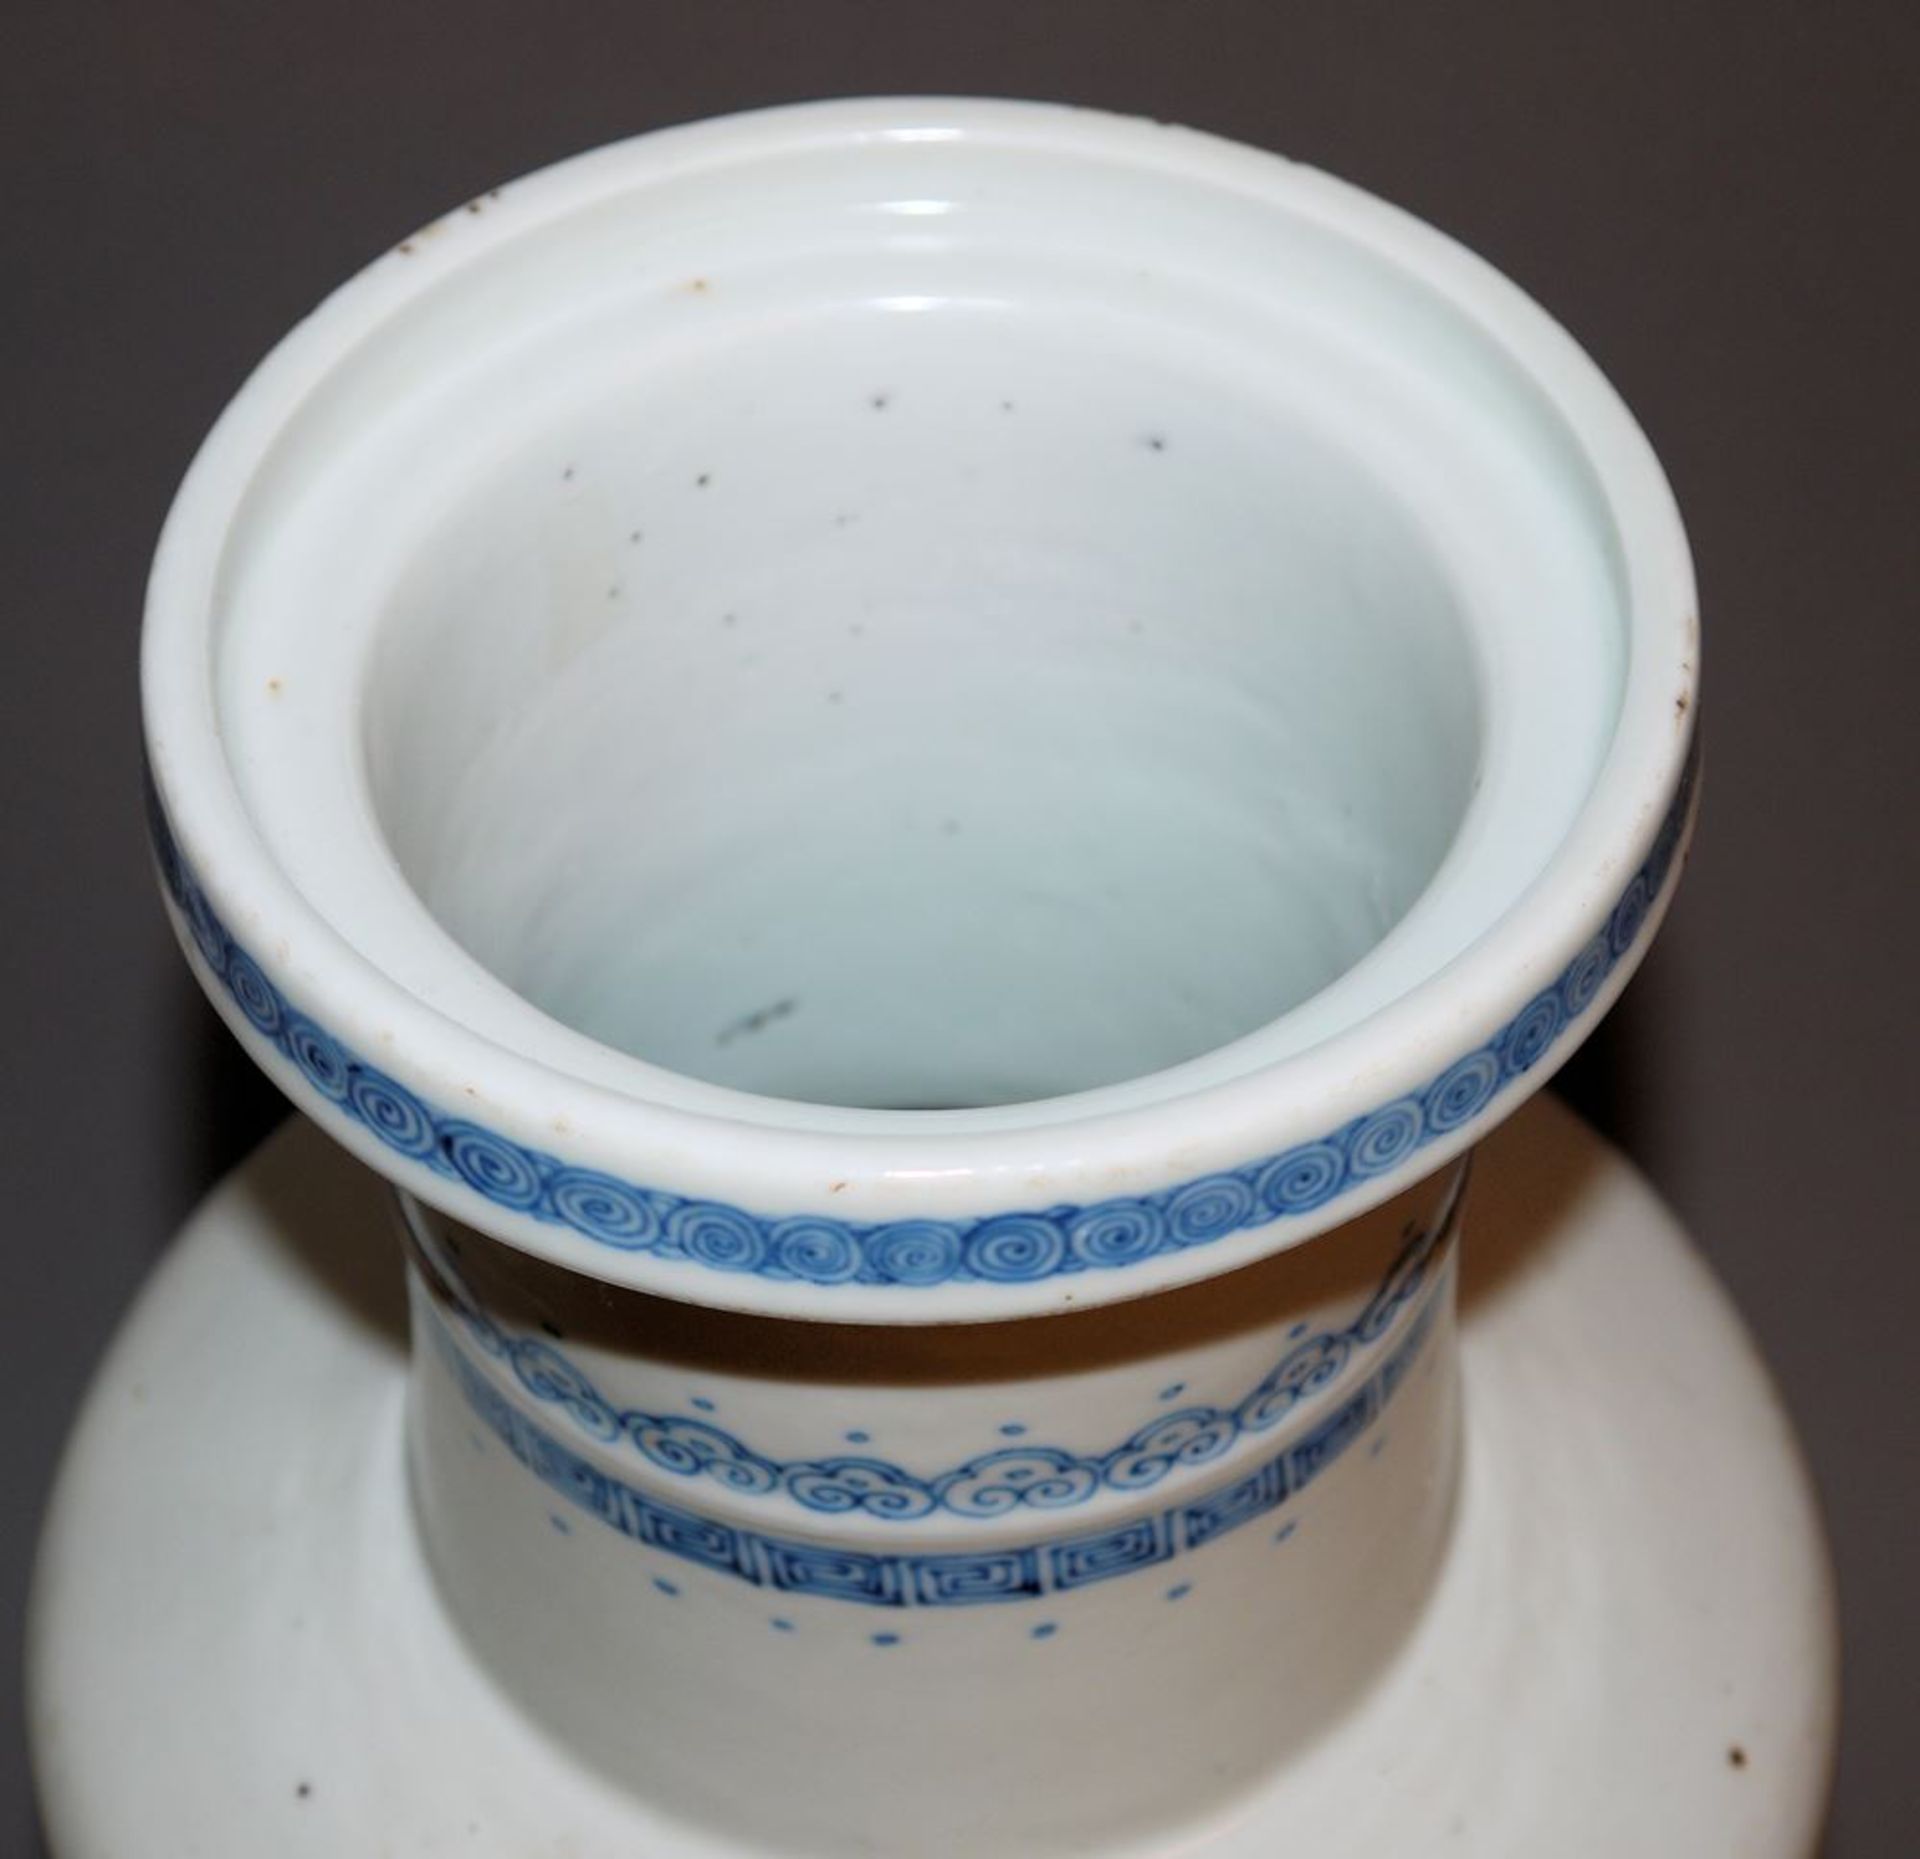 Große Blauweiß-Vase, Form Bangcui, wohl Guangxu-Zeit, China, Ende 19. Jh. - Bild 4 aus 5